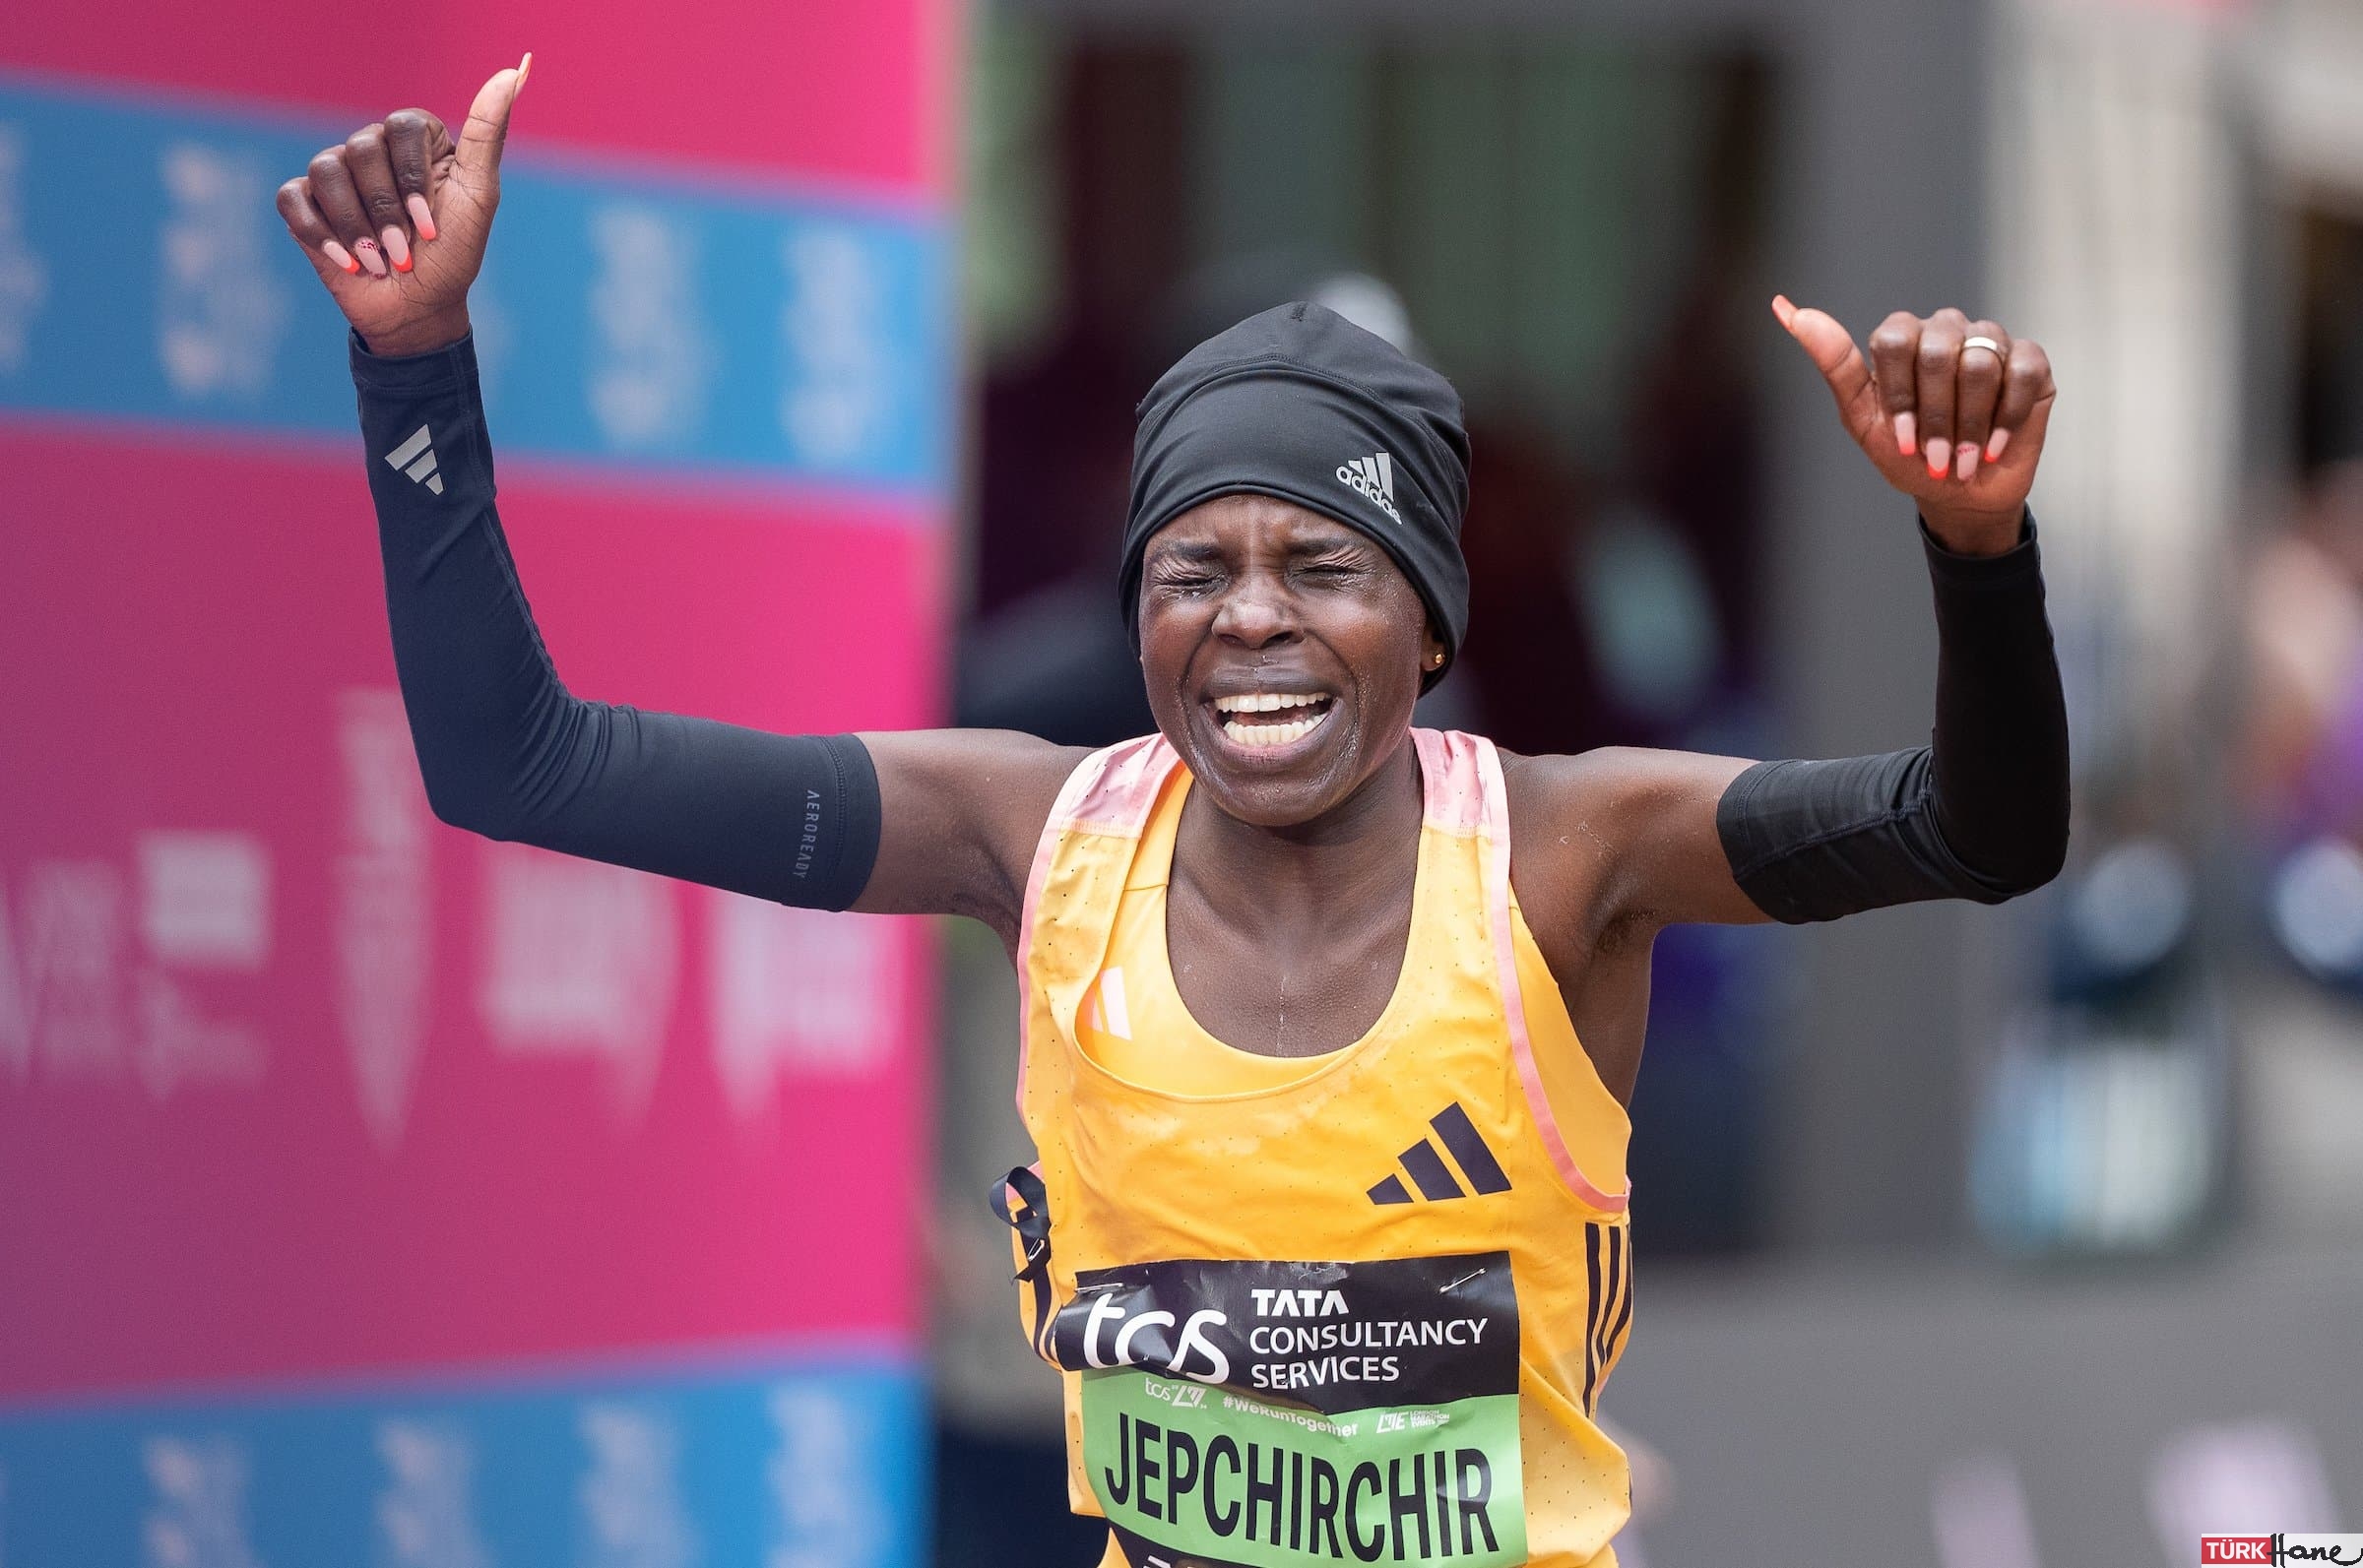 Kenyalı atlet Jepchirchir kadınlar dünya rekorunu kırdı